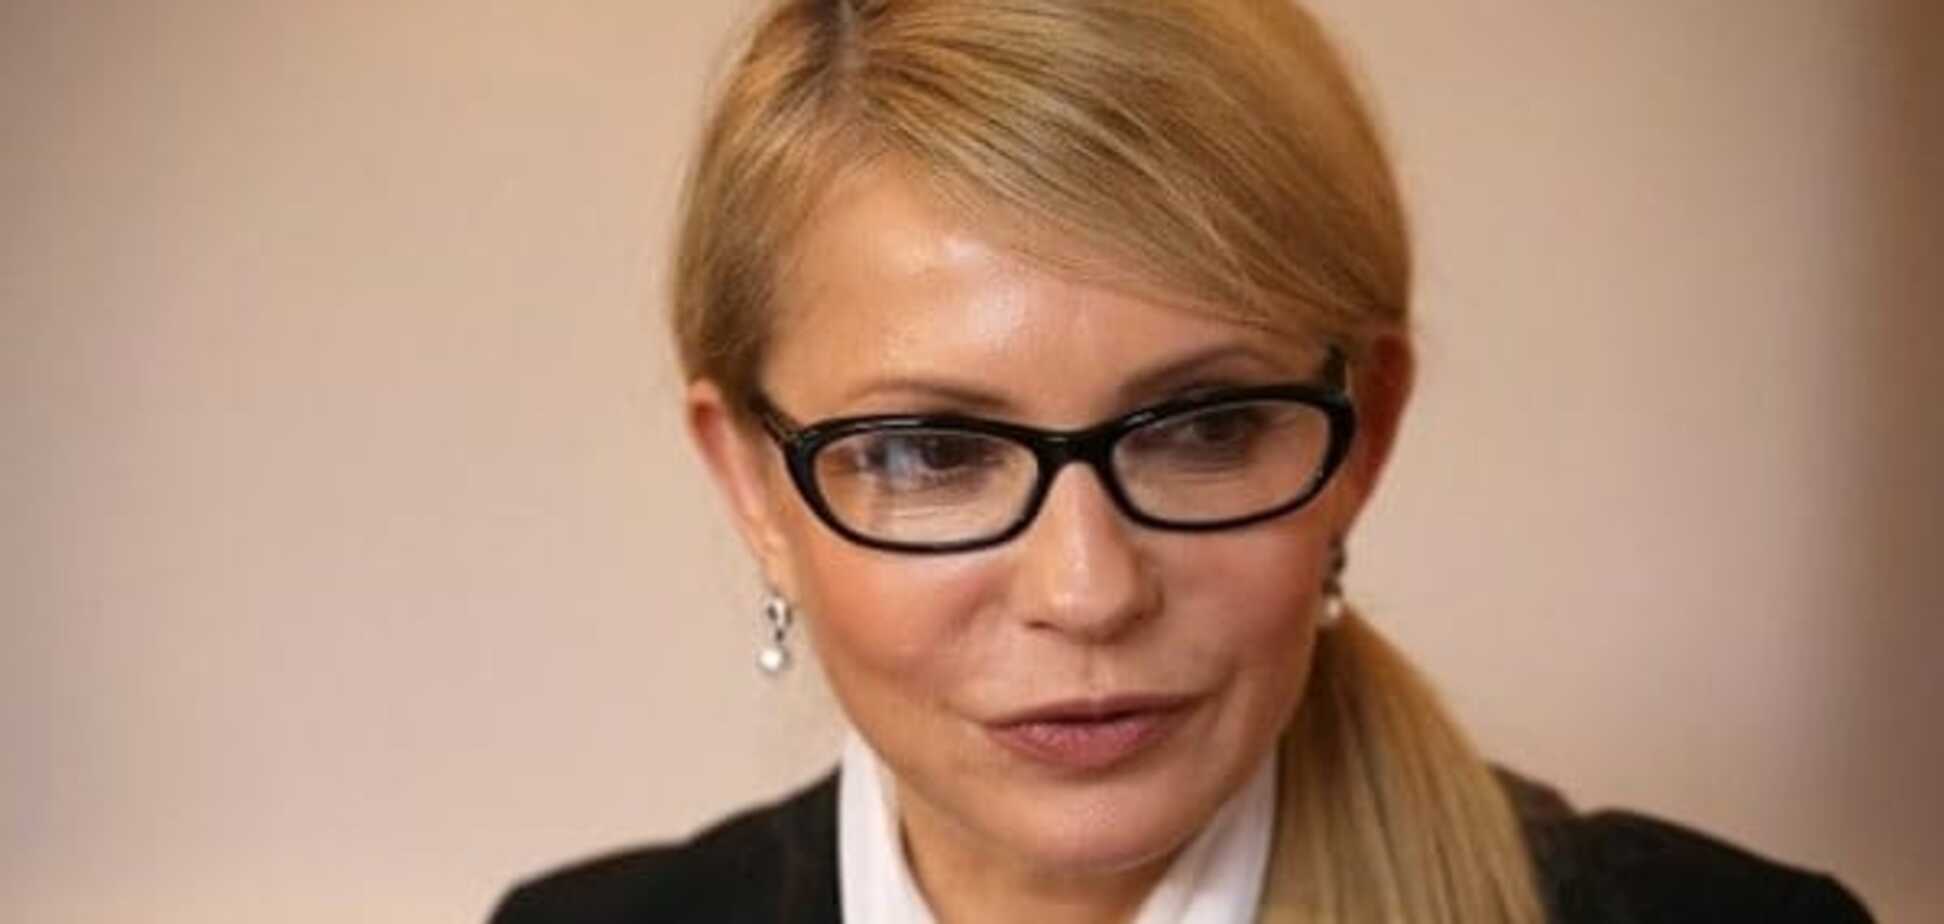 Пора прекратить абсурд: Тимошенко предложила изменить стратегию управления страной